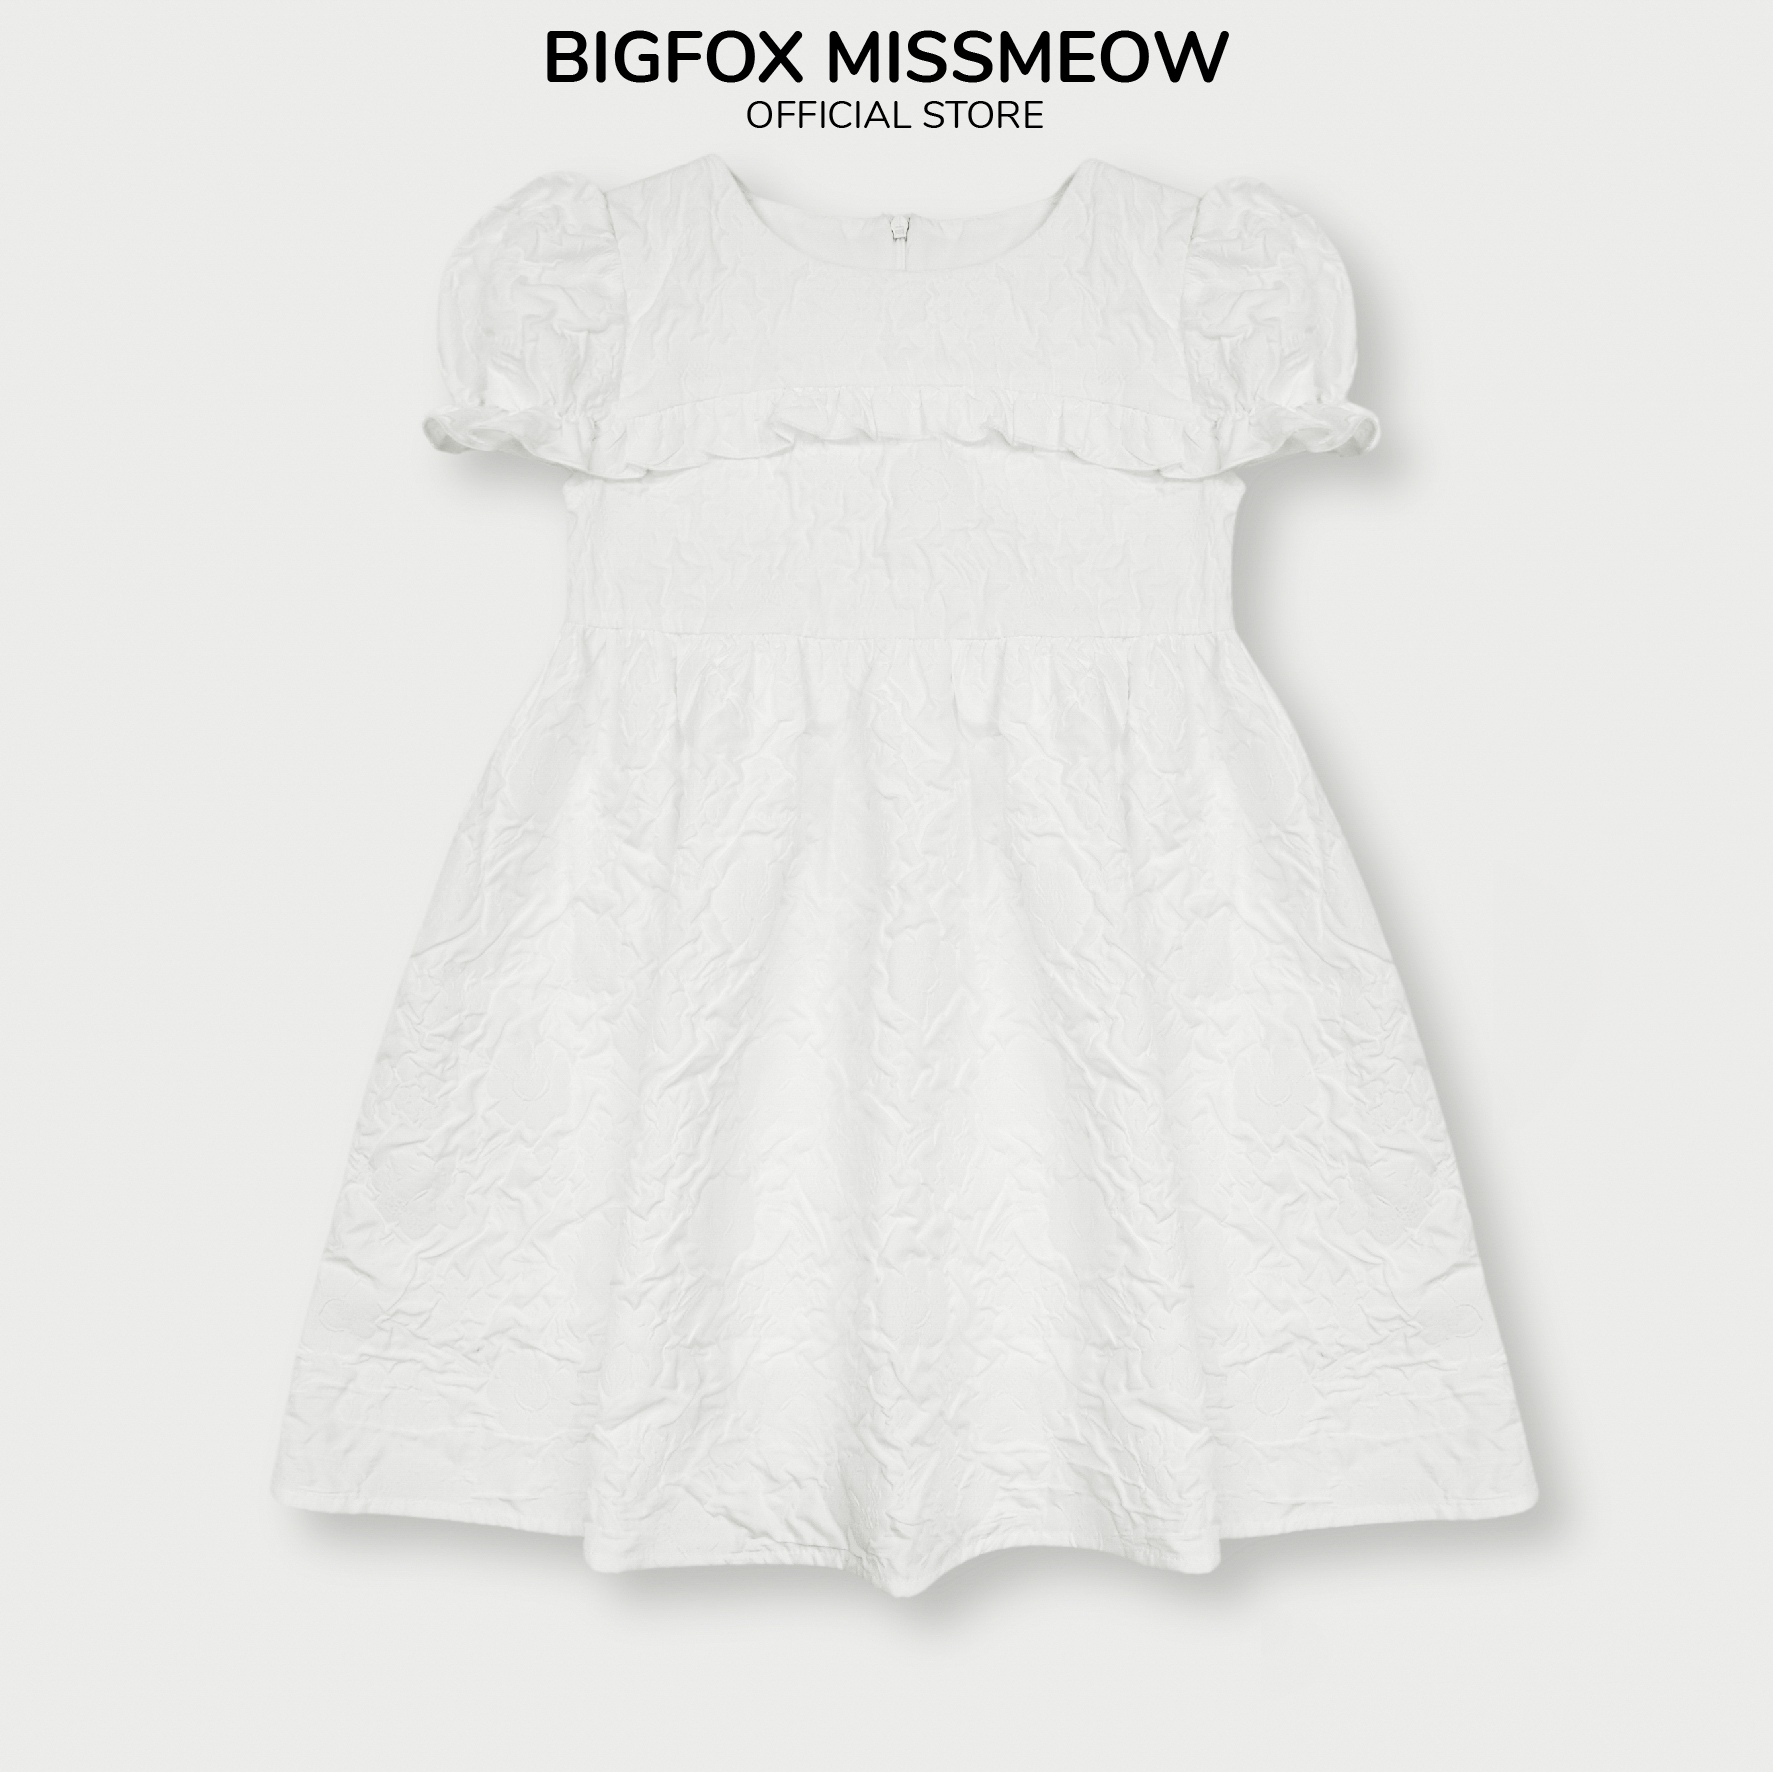 Đầm váy cho bé gái Bigfox Miss Meow size đại mùa hè tay phồng dáng babydoll vải taffeta hoa trắng size trẻ em 3-11 tuổi